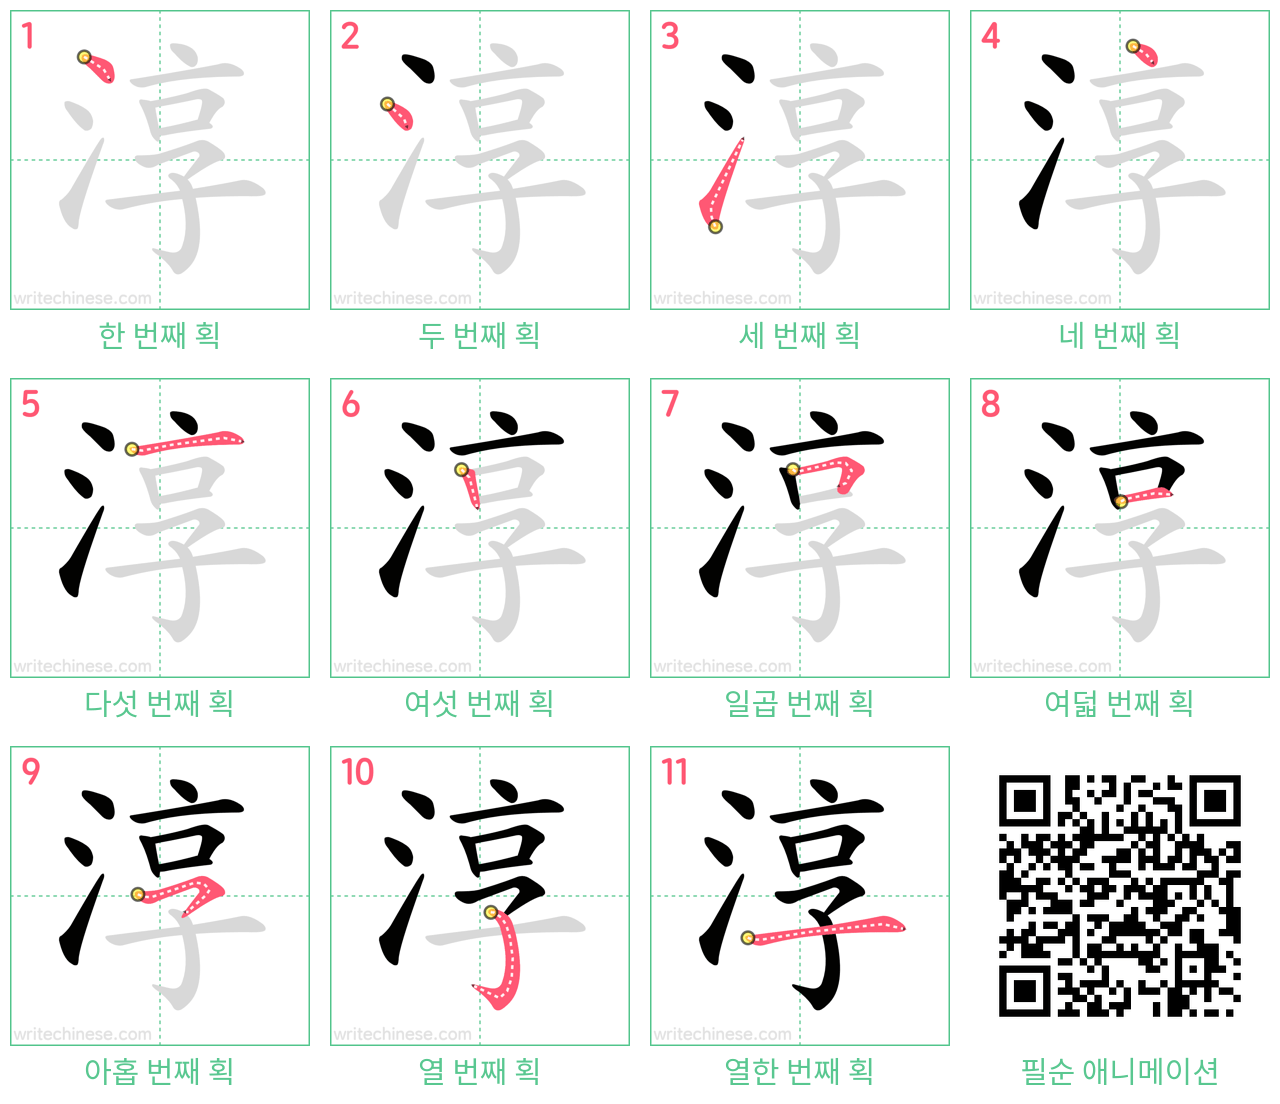 淳 step-by-step stroke order diagrams